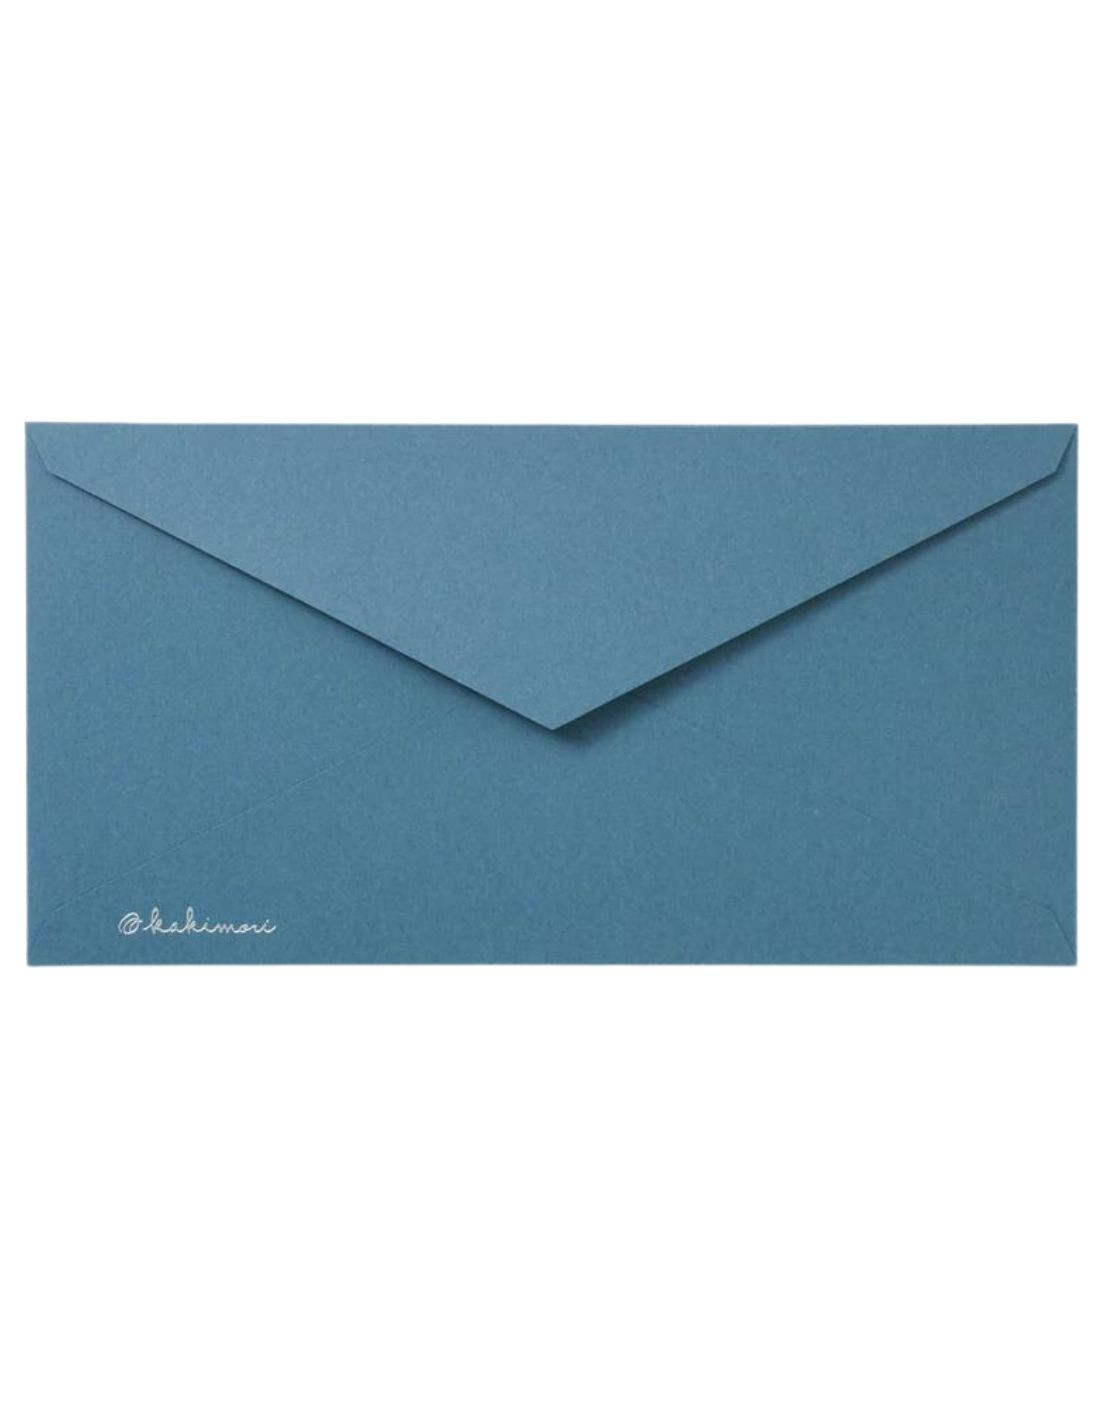 Lot d'enveloppes Kakimori - Bleu Gris